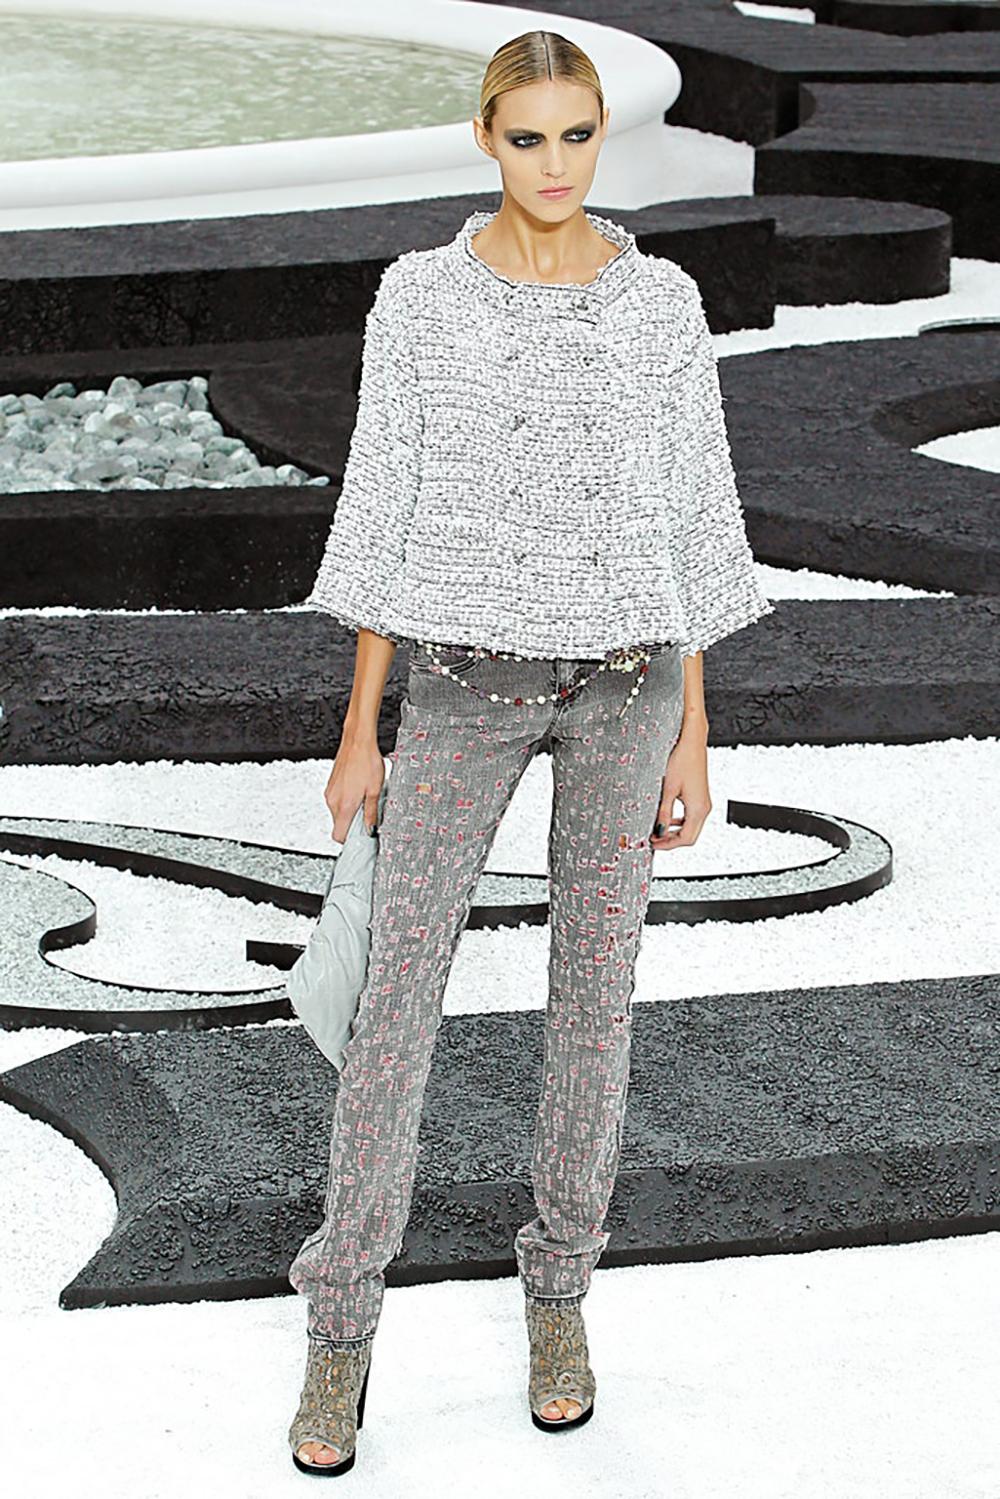 Défilé Chanel de la veste en tweed Lesage de la Collection S 2011 de Karl Lagerfeld.
Taille 36 FR. Excellent état
- double rangée de boutons en lucite portant le logo CC
- doublure en soie ton sur ton avec camélias
- maillon de chaîne à l'ourlet
